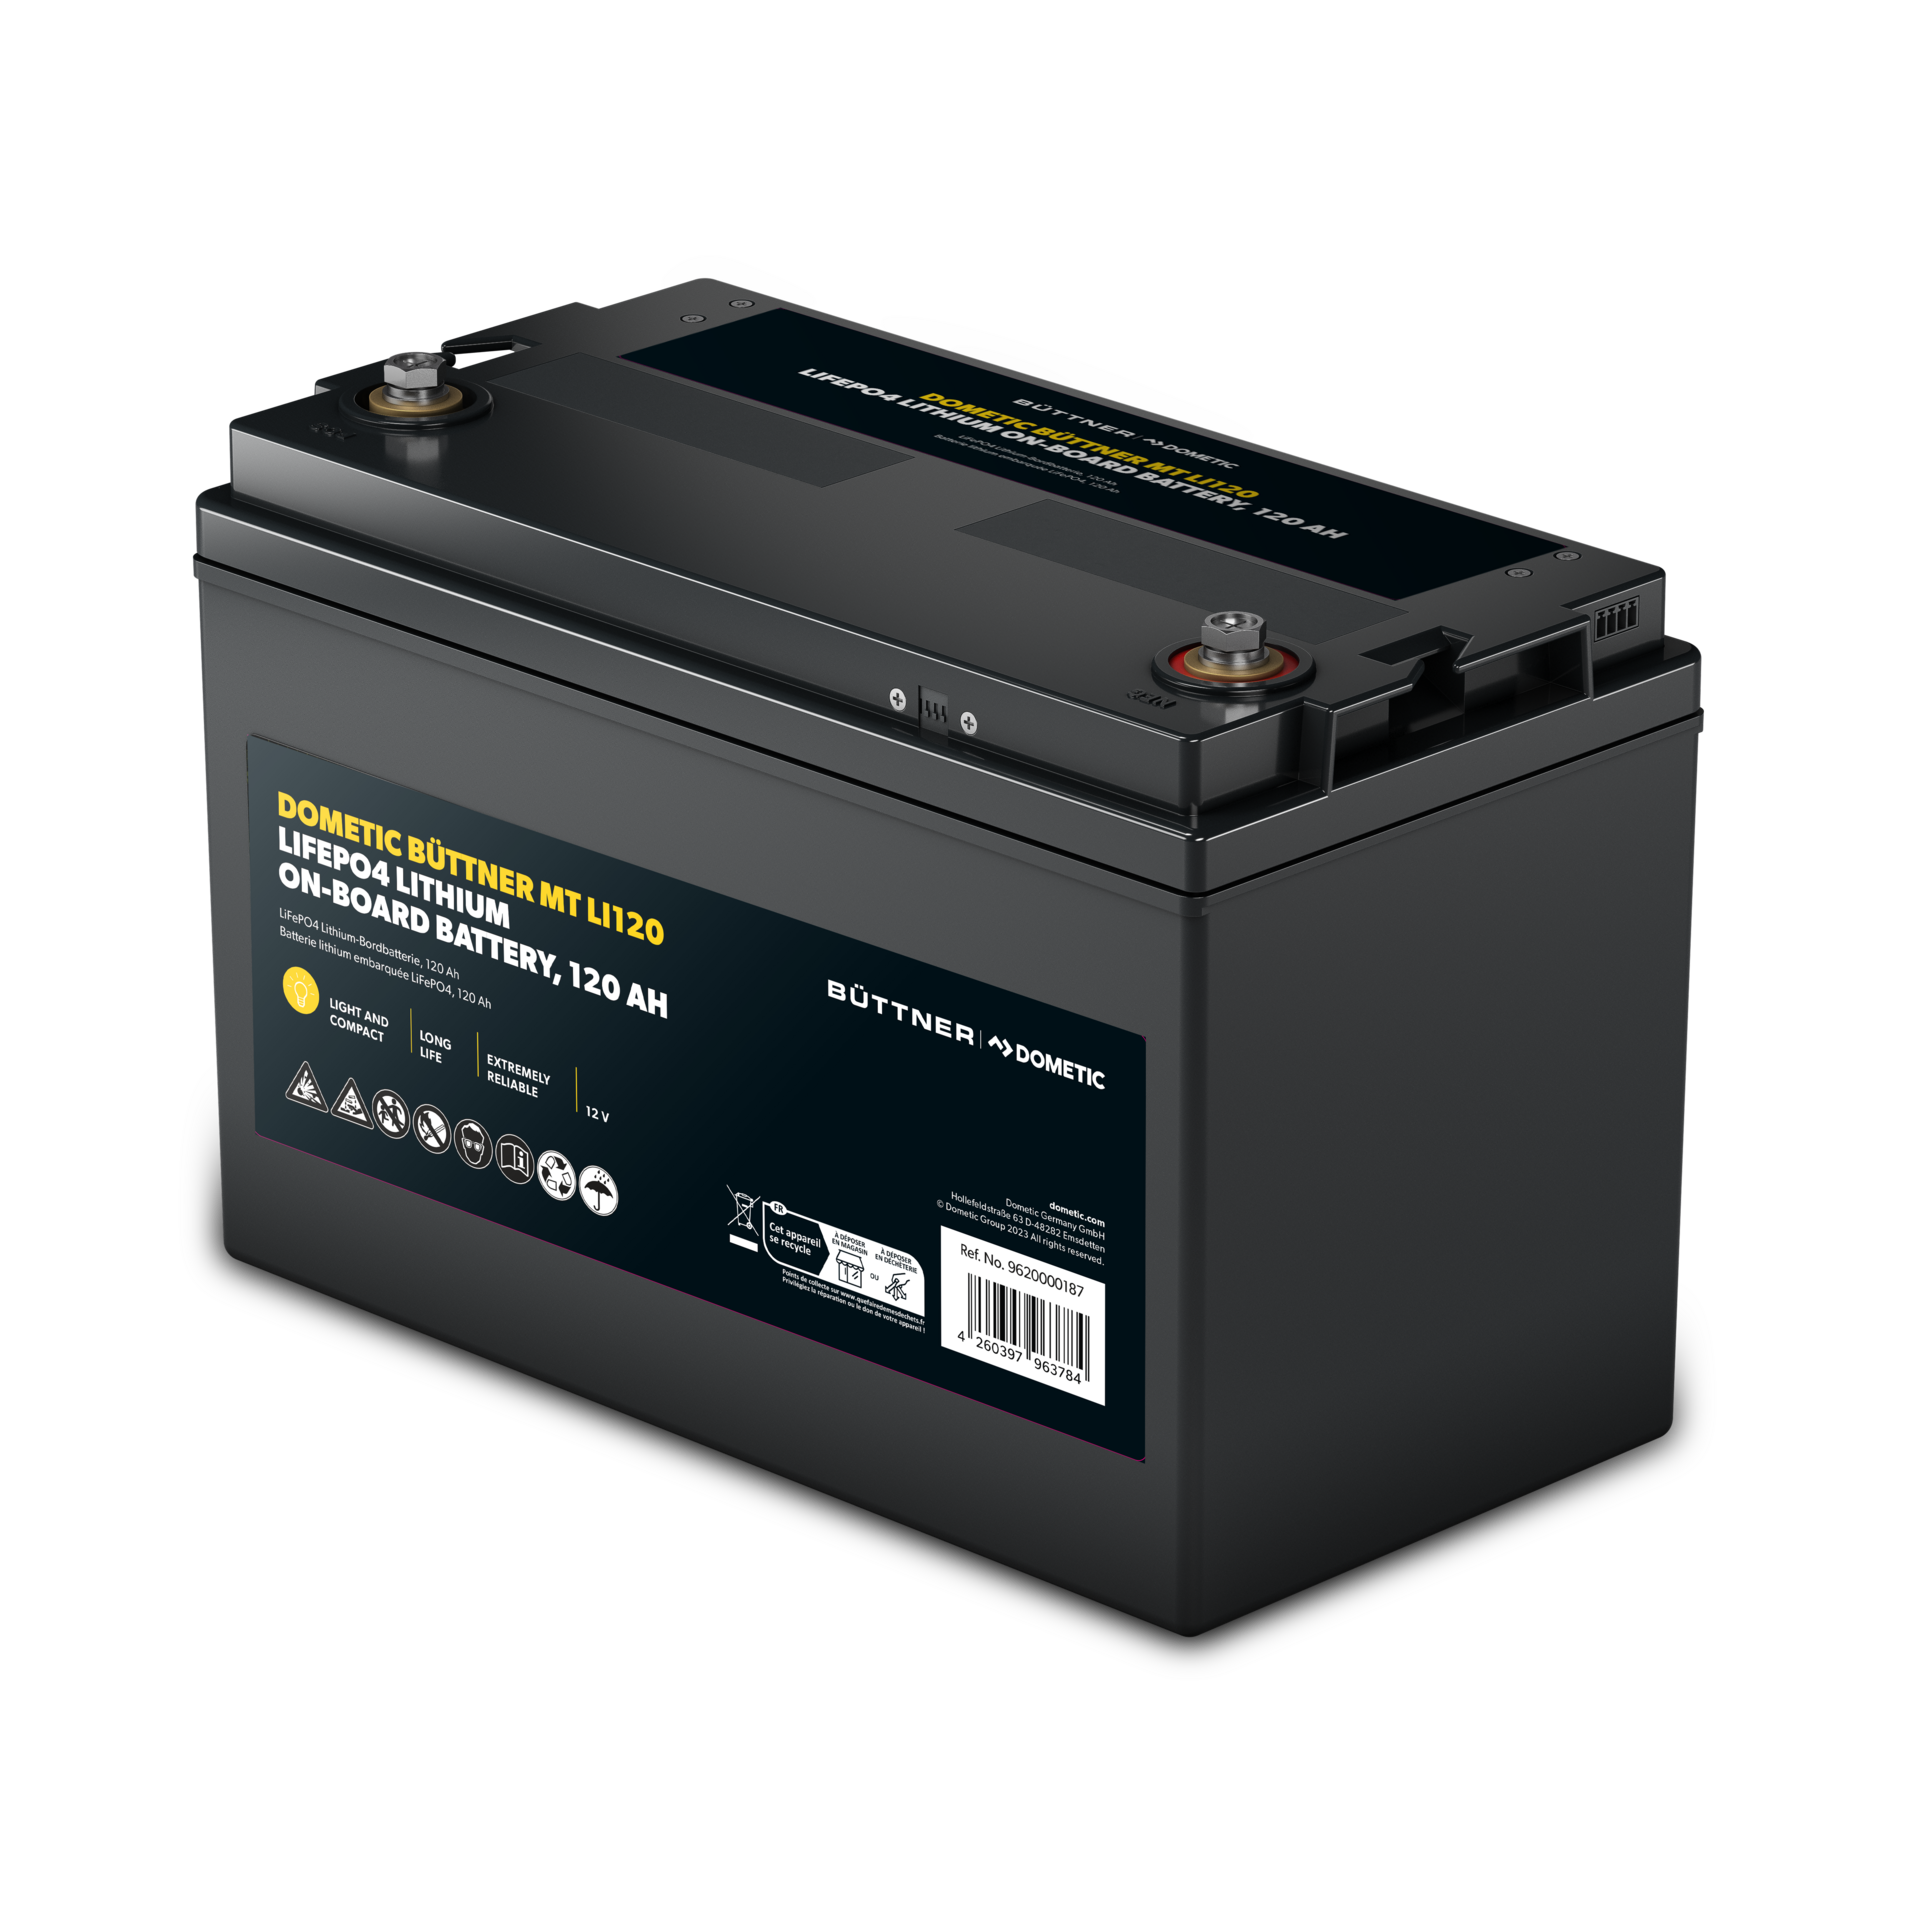 200A Battery Monitor mit Hall-Sensor für AGM und Lithium Batterien